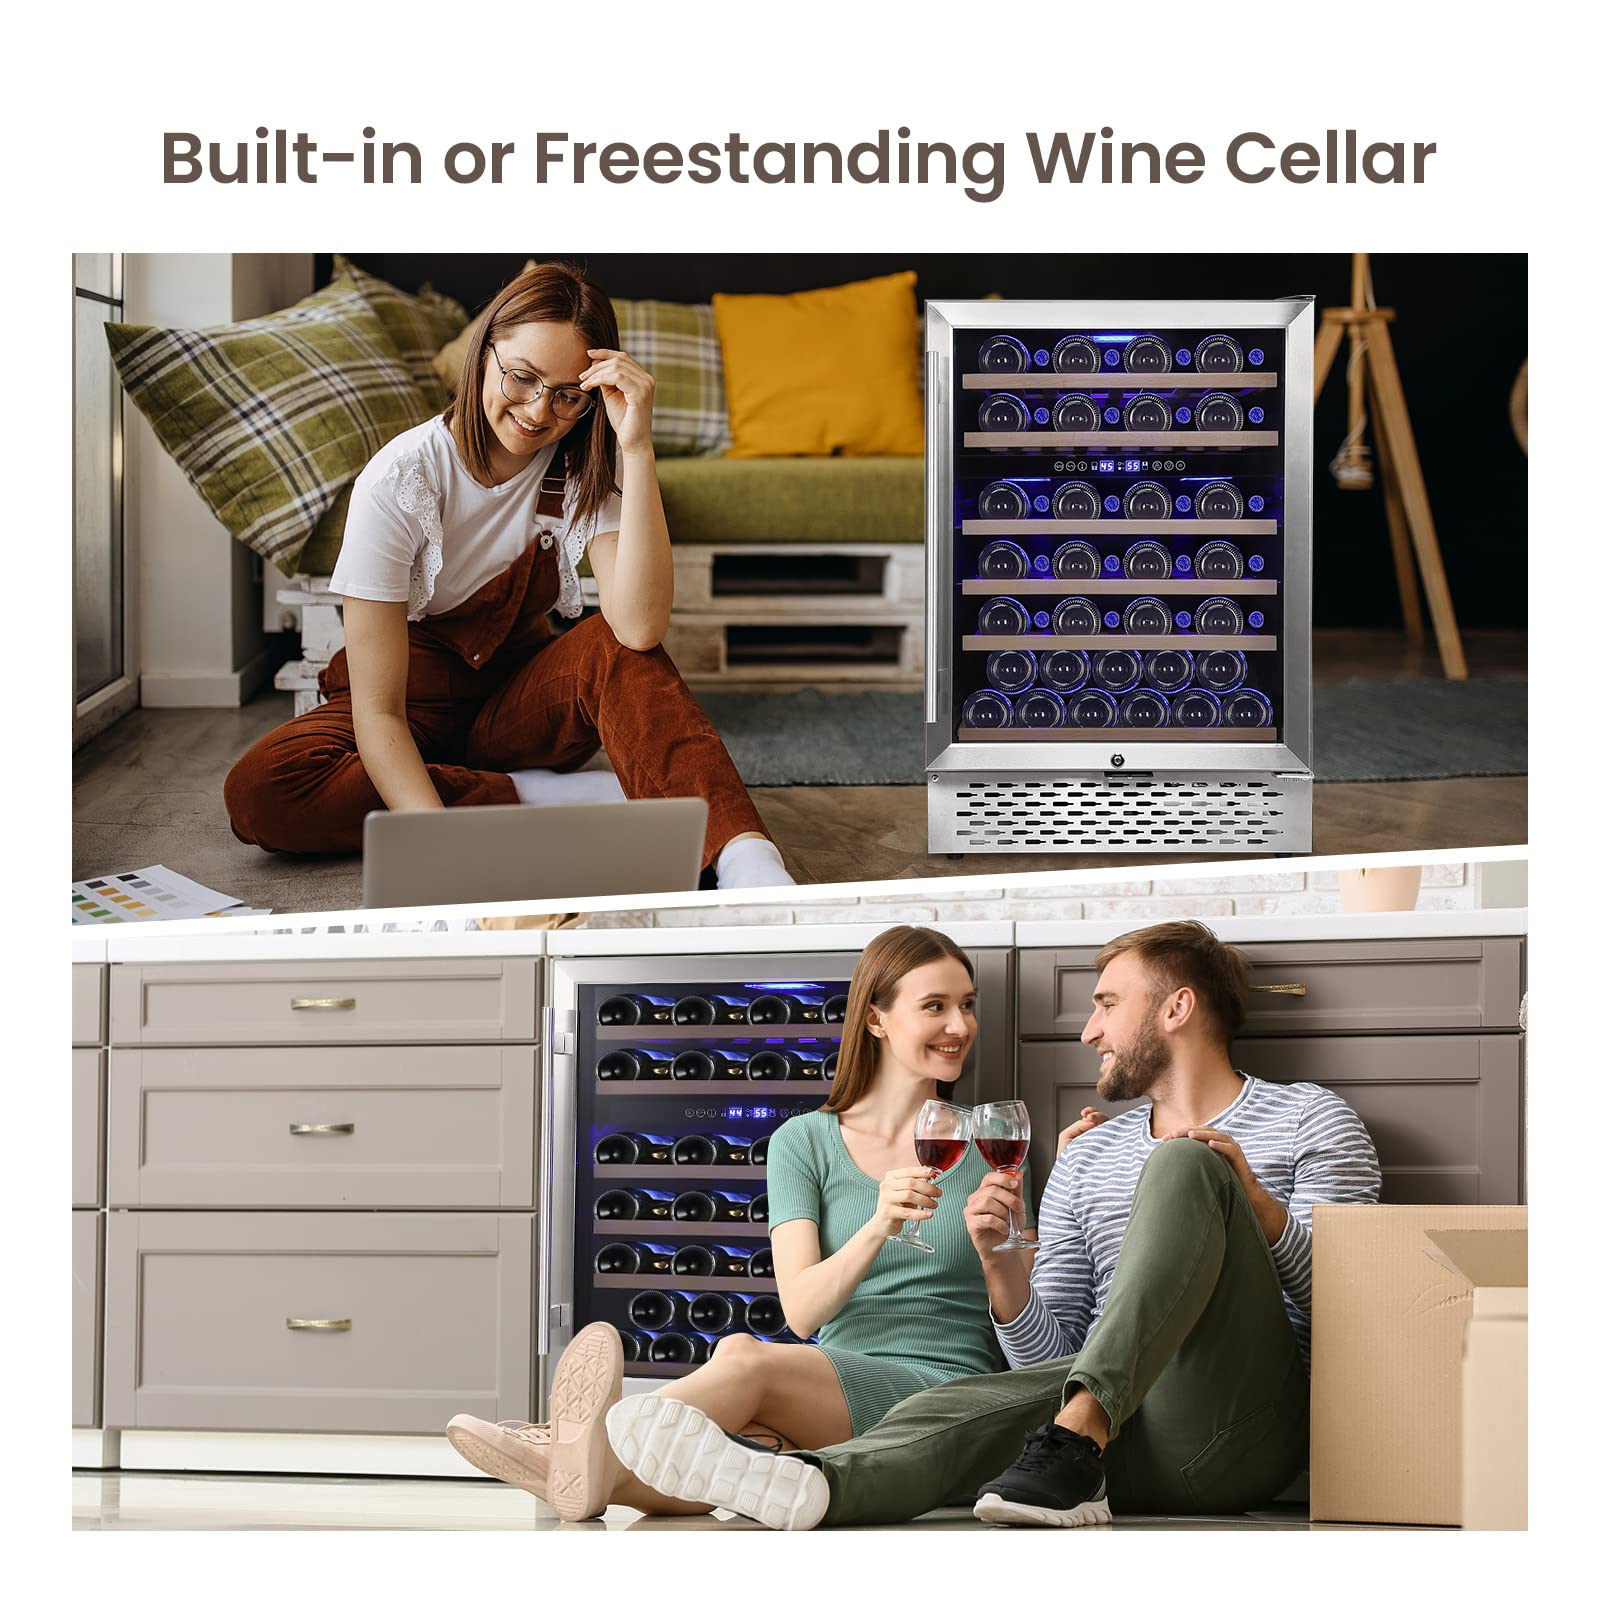 51 Bottles Wine Cooler, Dual Zone Compressor, Fits Freestanding - GARVEE